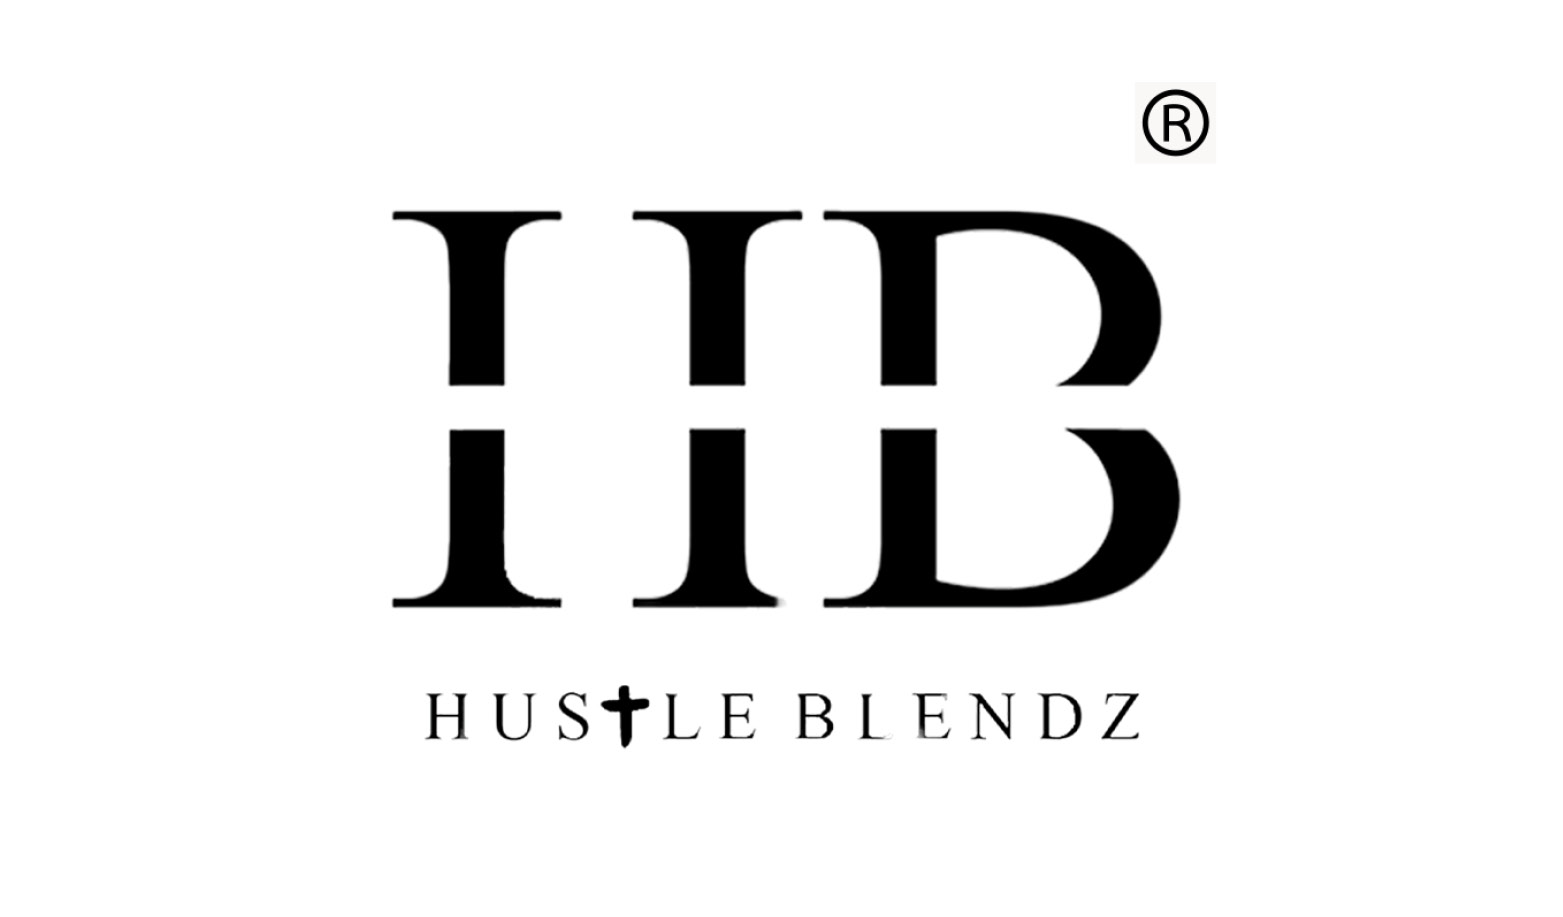 restaurant logos_hustle_blendz